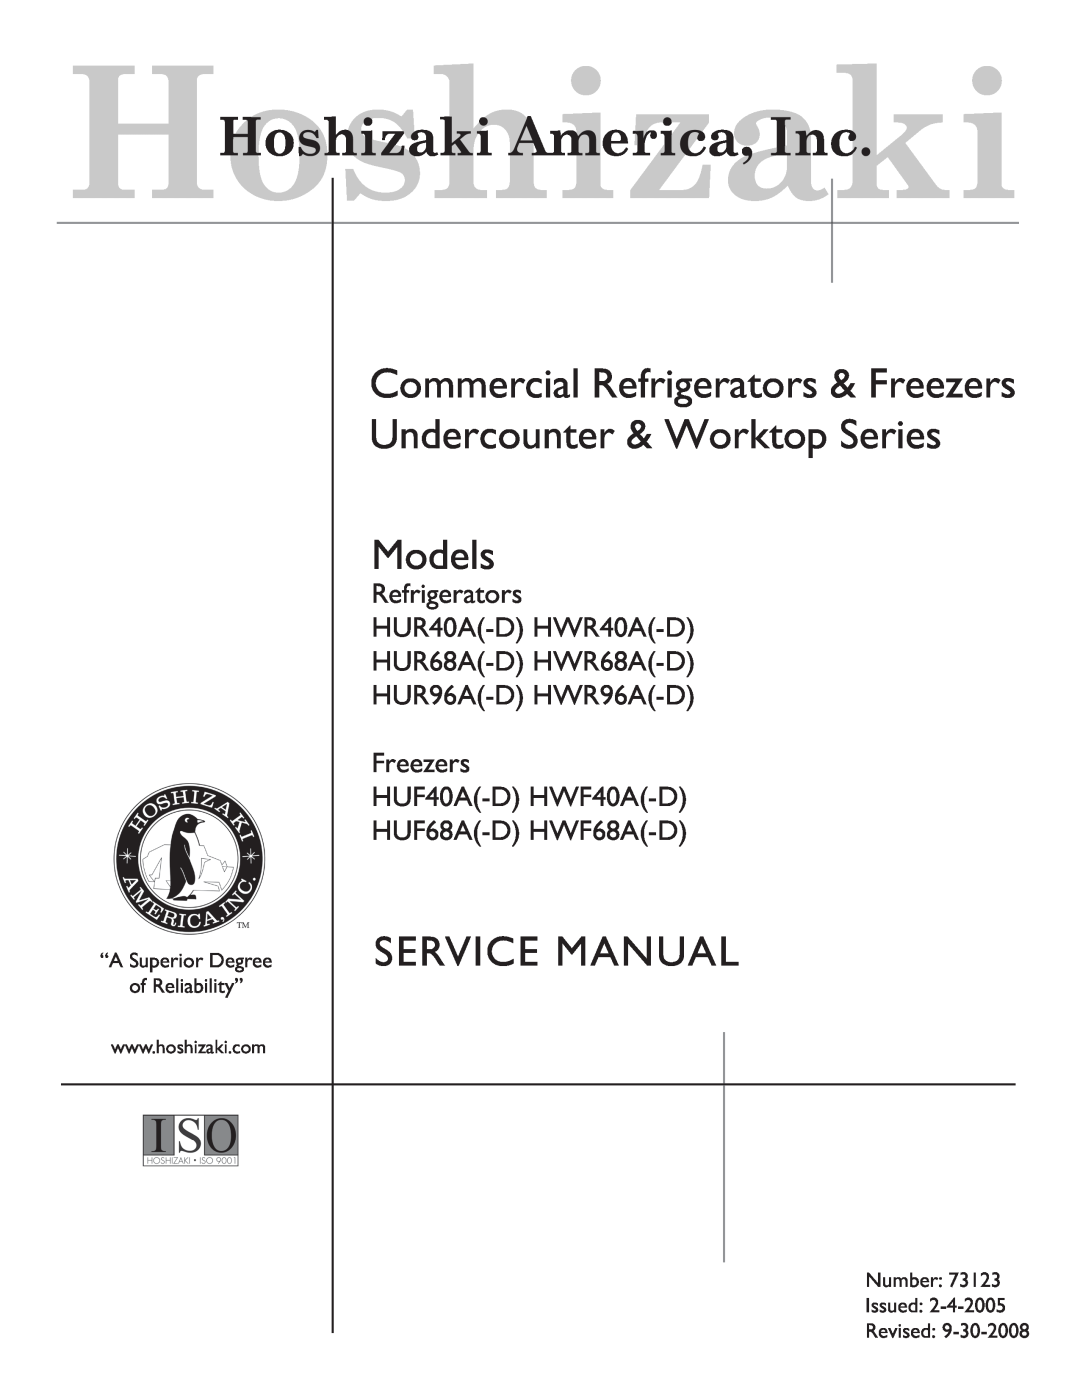 Hoshizaki HUR96A(-D), HWR40A(-D), HUR68A(-D) service manual Models, Service Manual, HoshizakiHoshizaki America, Inc 